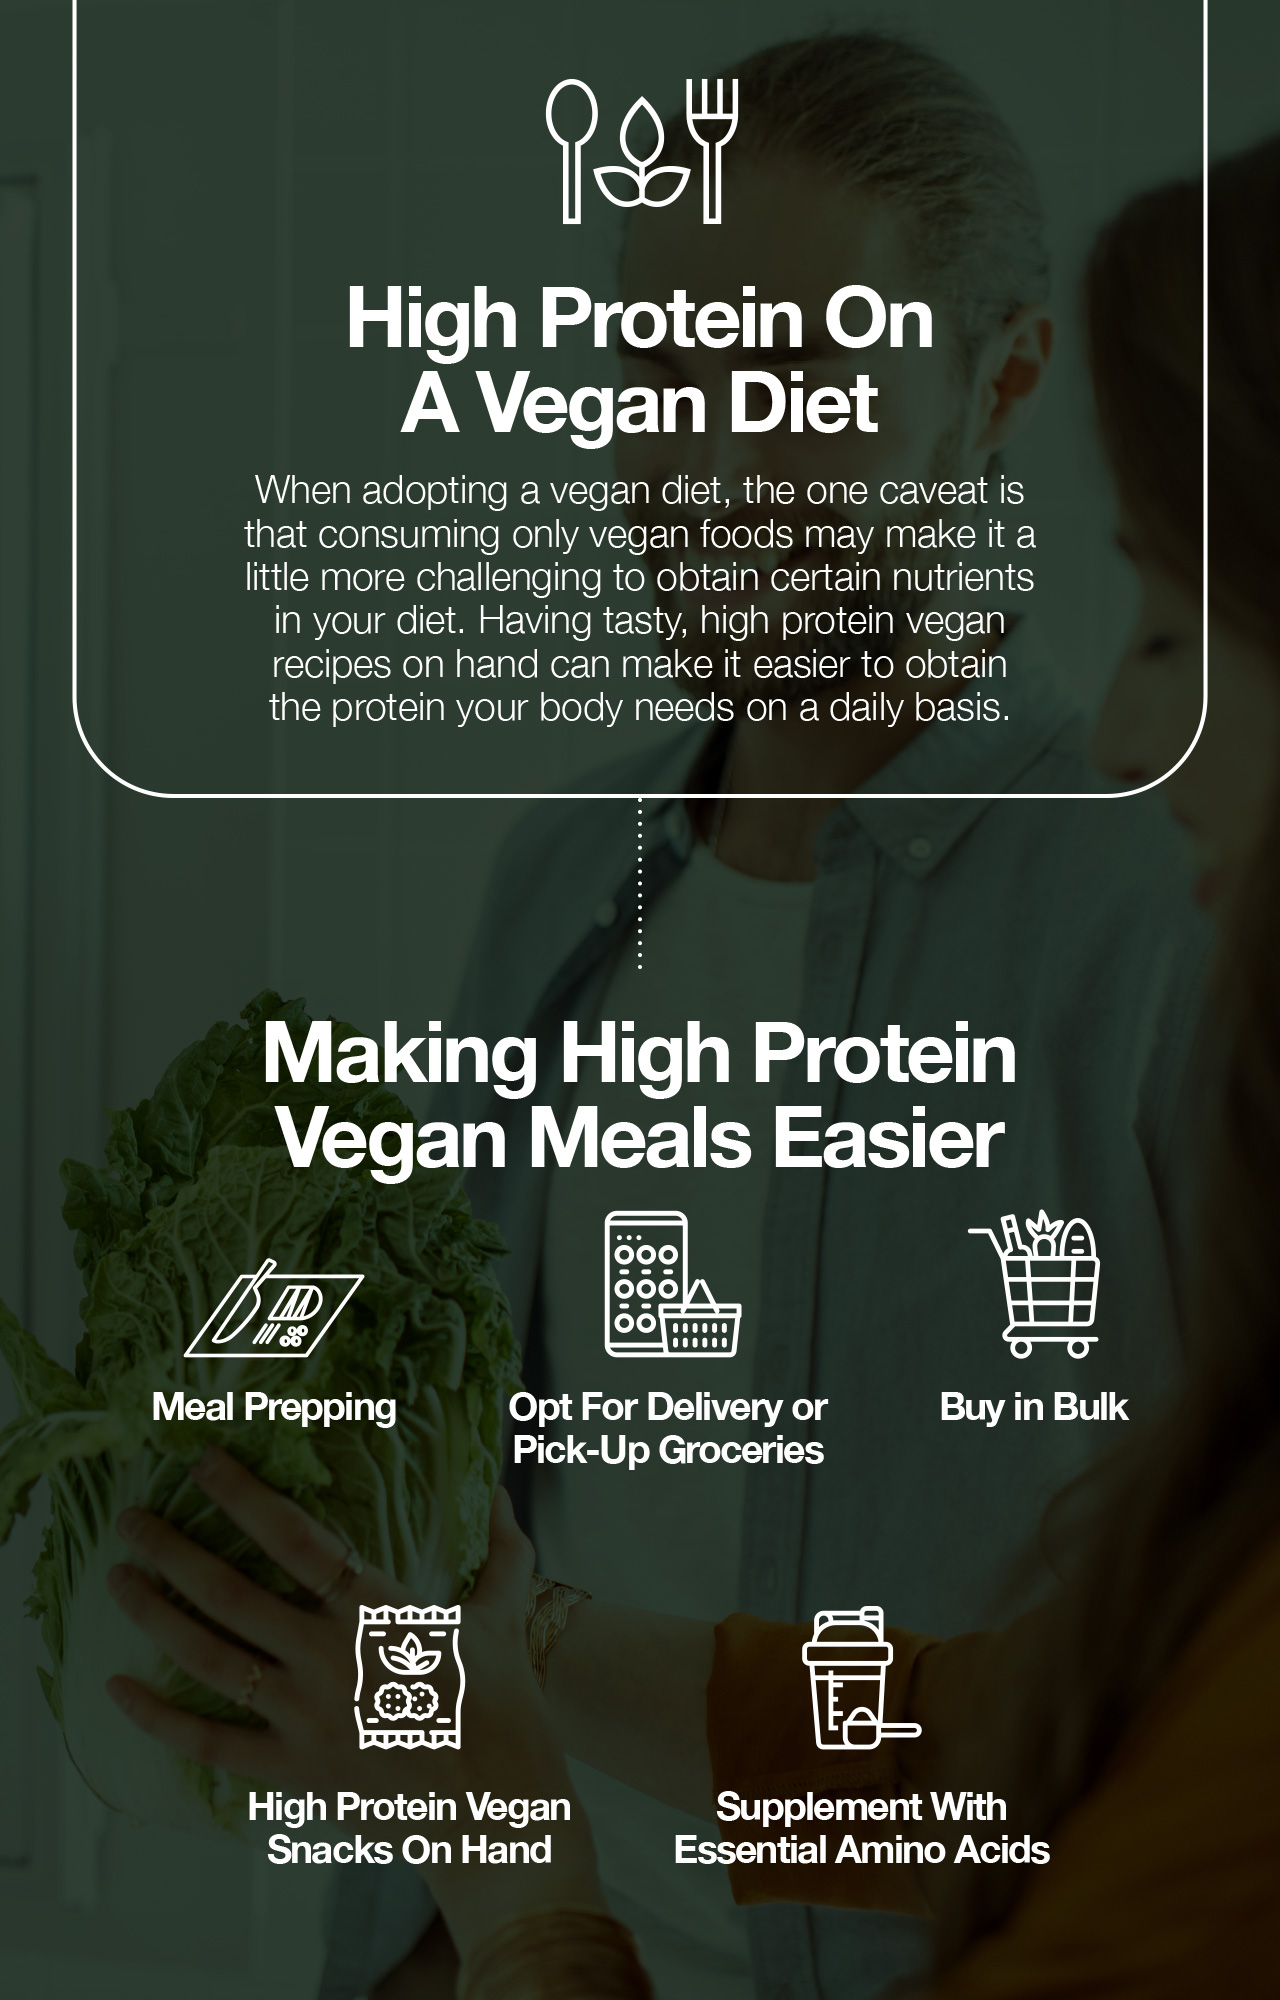 High protein on a vegan diet